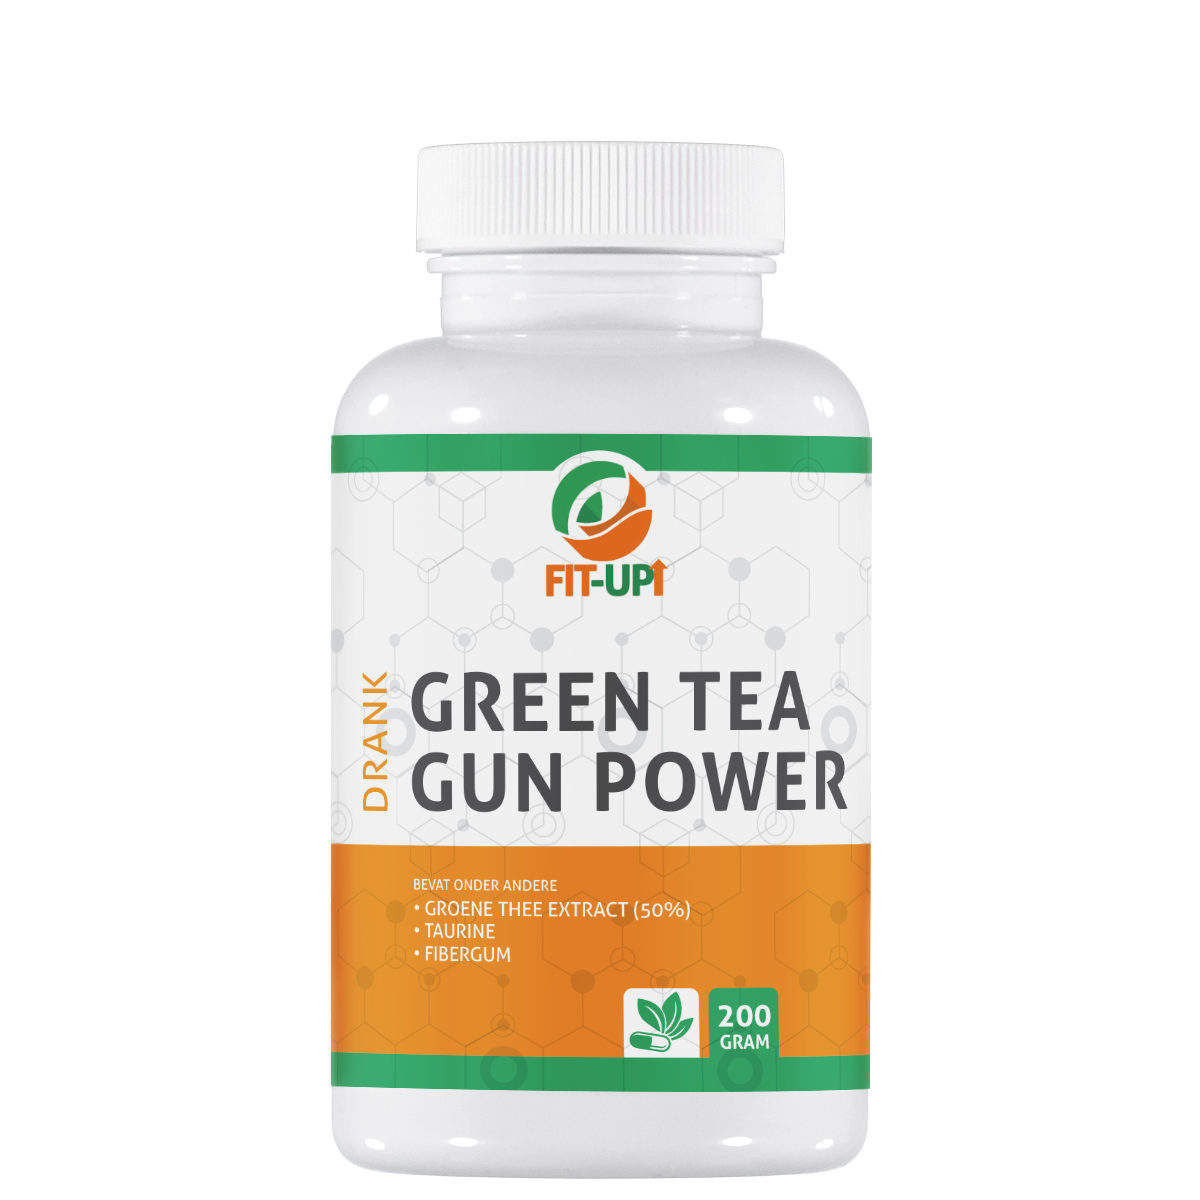 Green tea gun power - drink